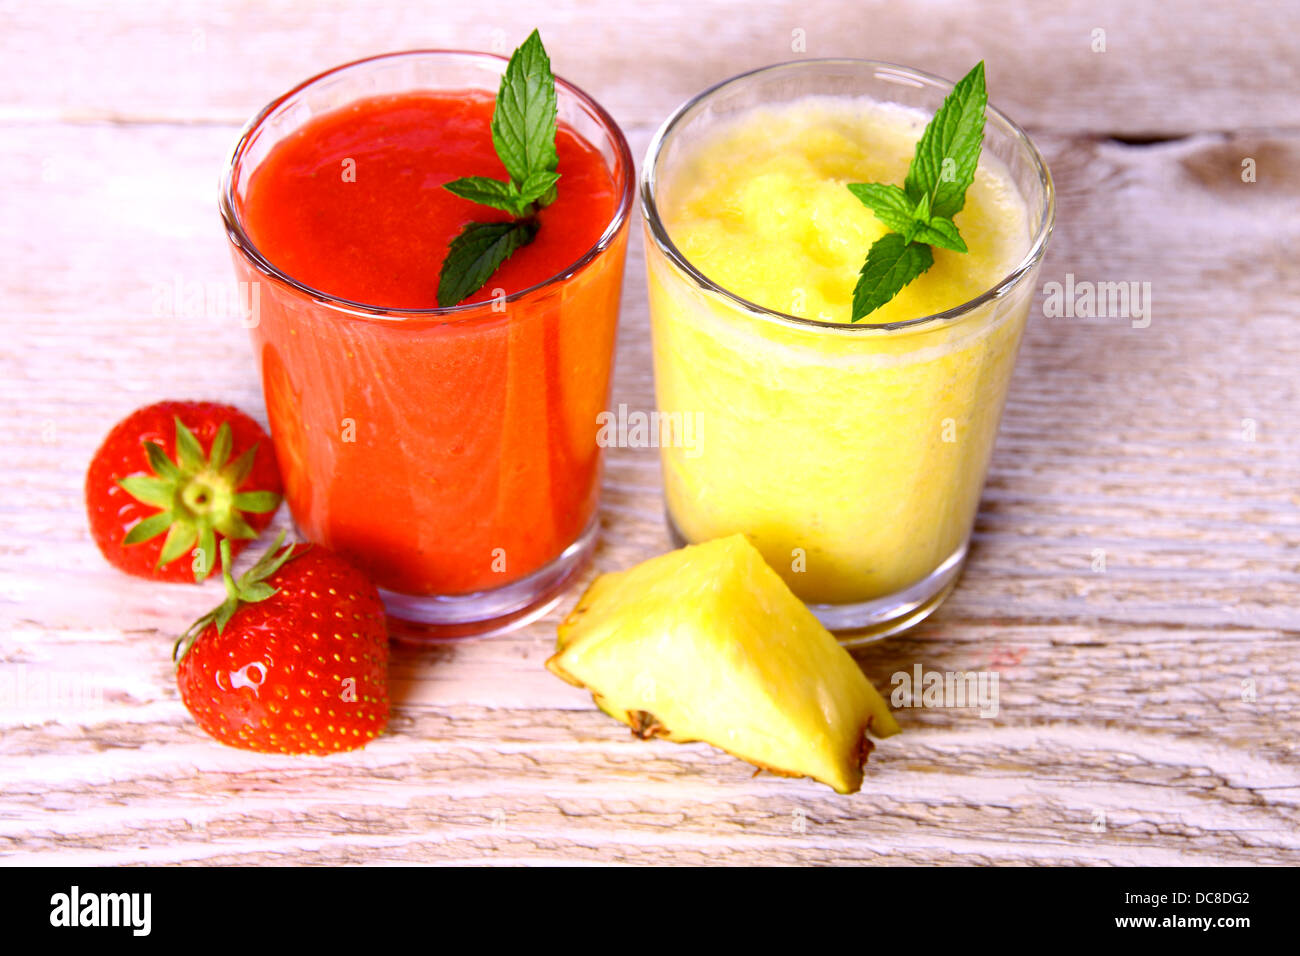 Smoothie ananas, fraises en verre avec de la menthe, des petits fruits, soft focus Banque D'Images